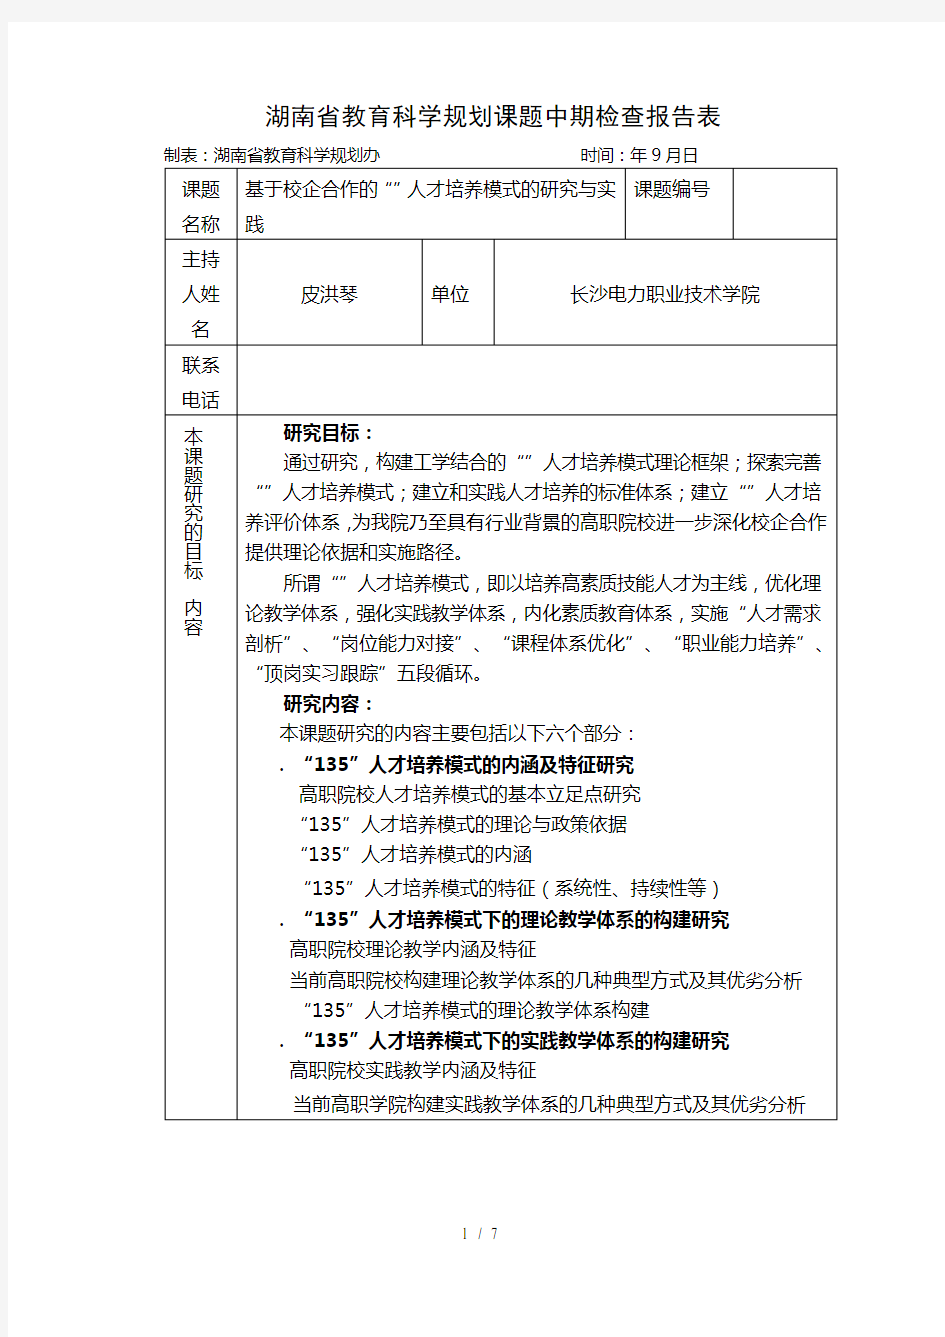 (完整版)湖南省教育科学规划课题中期检查报告表